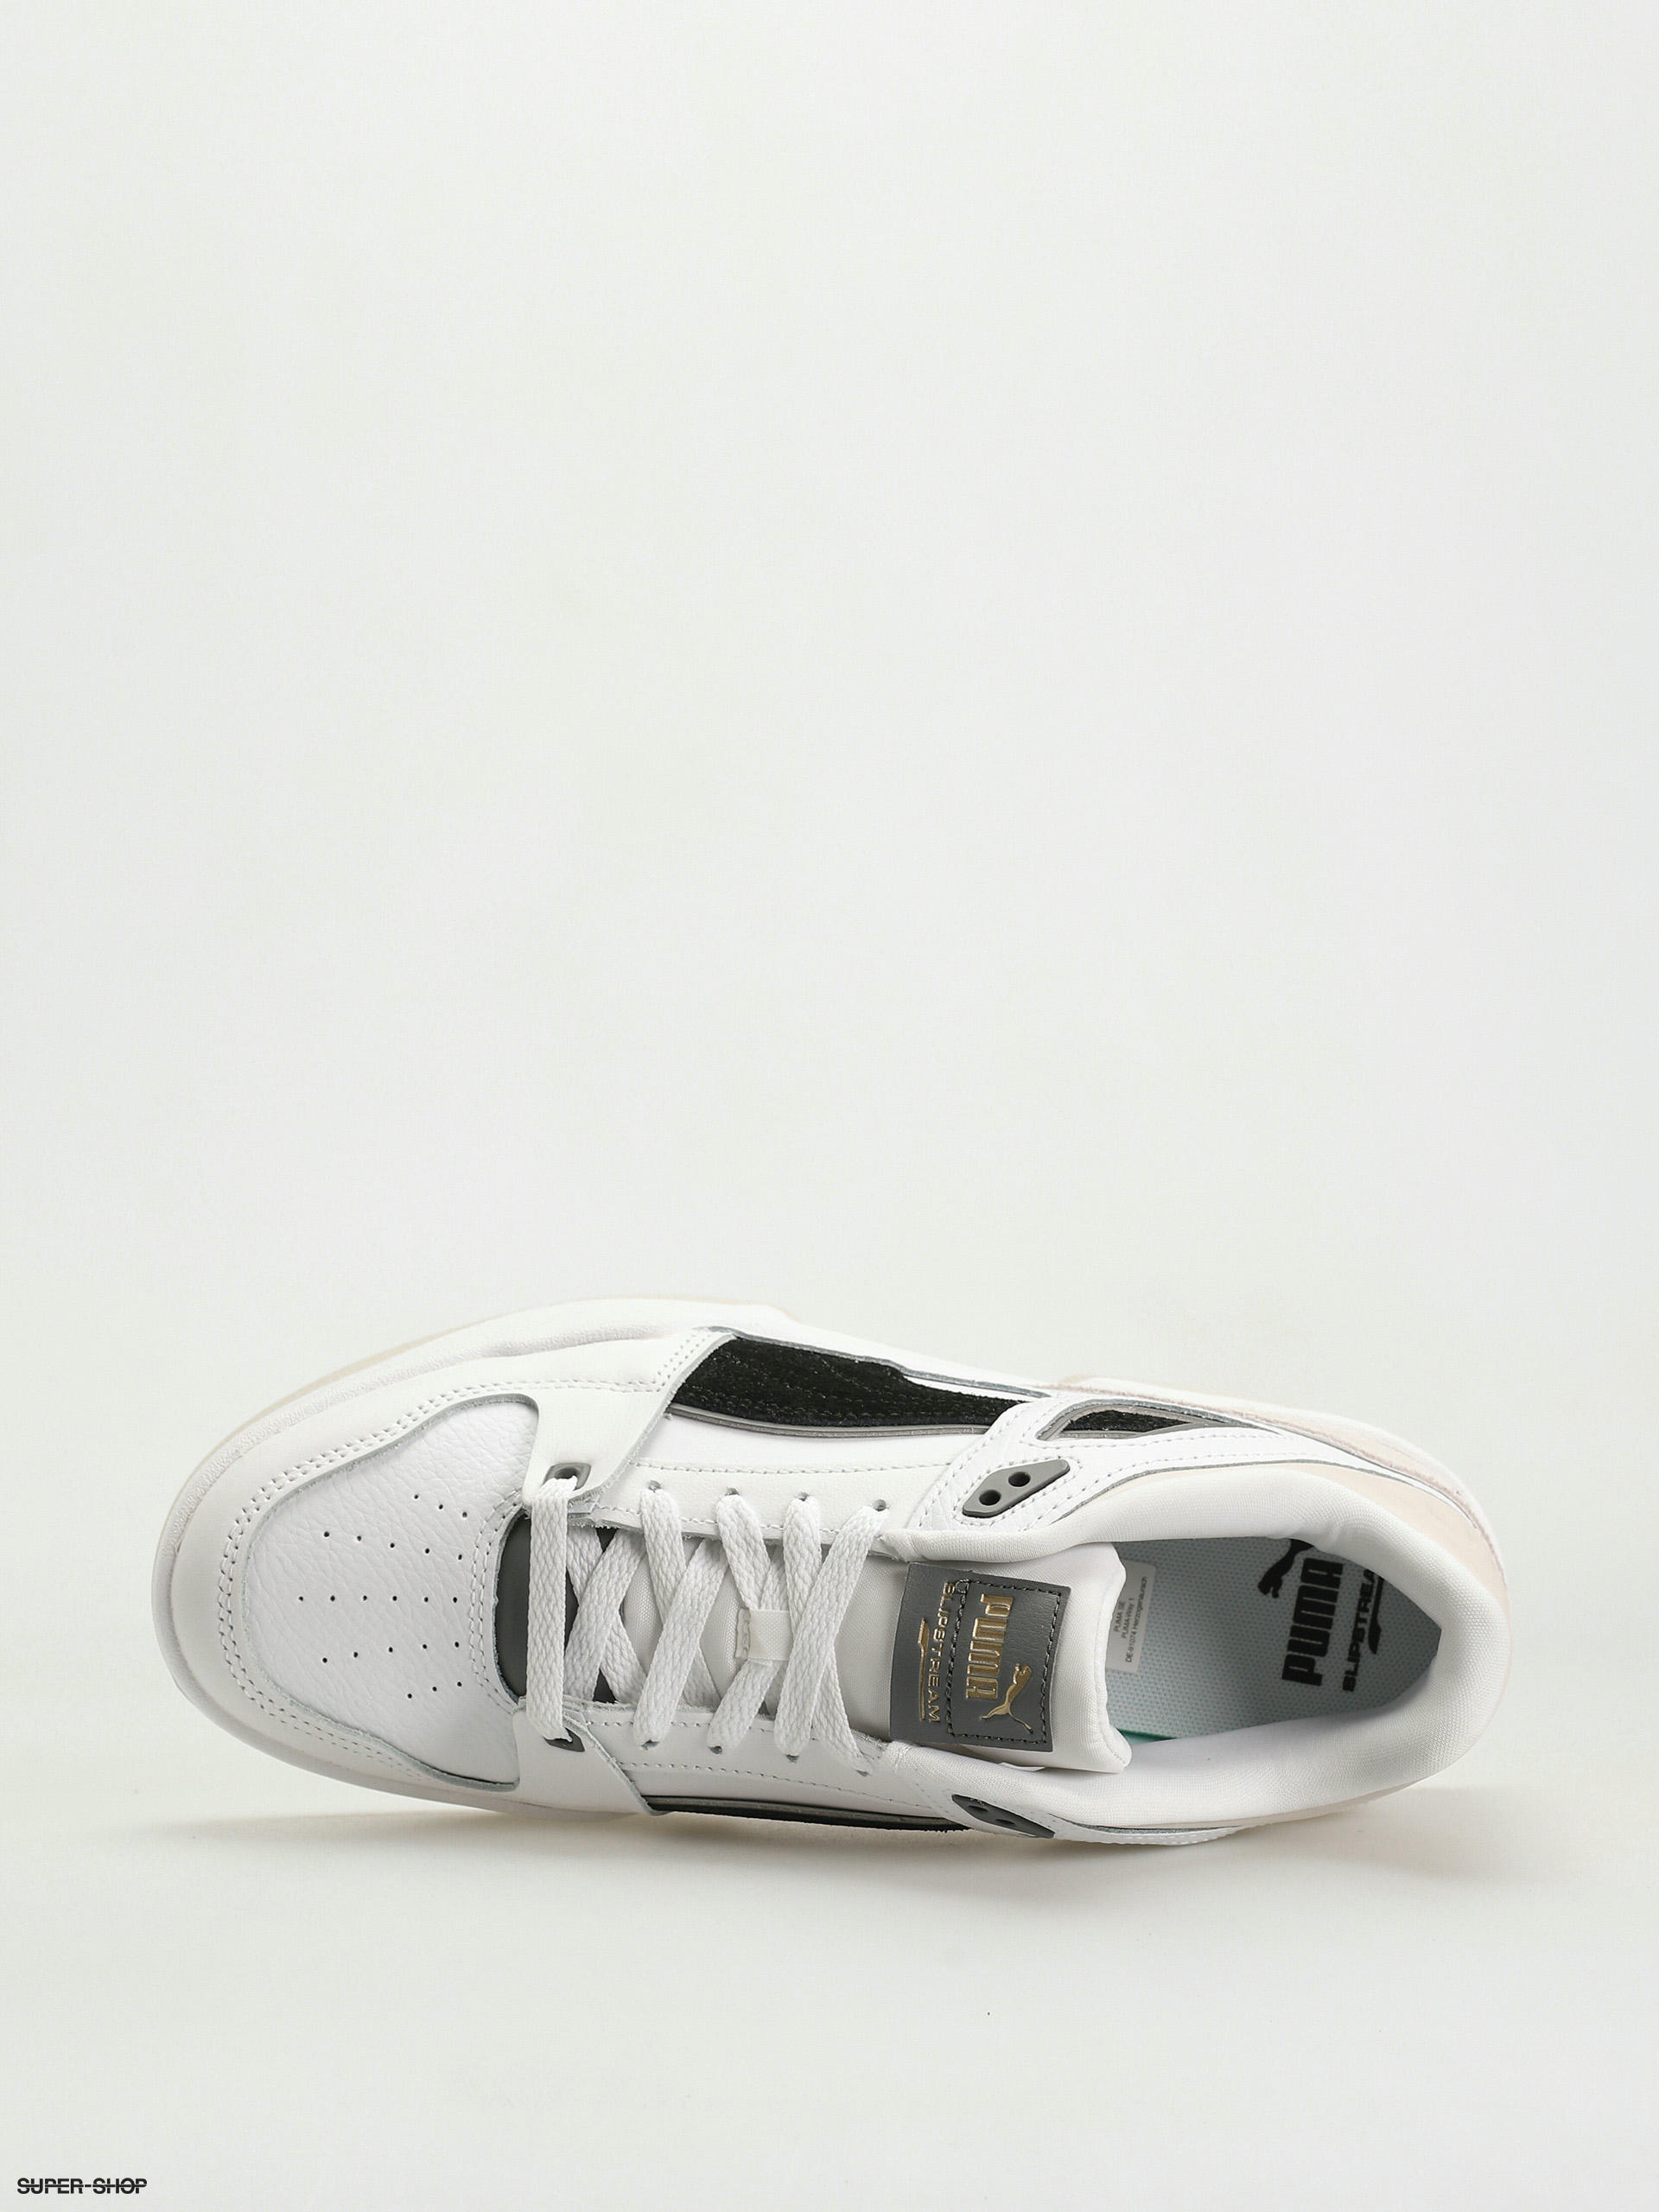 Puma Slipstream suede fs Shoes (white)